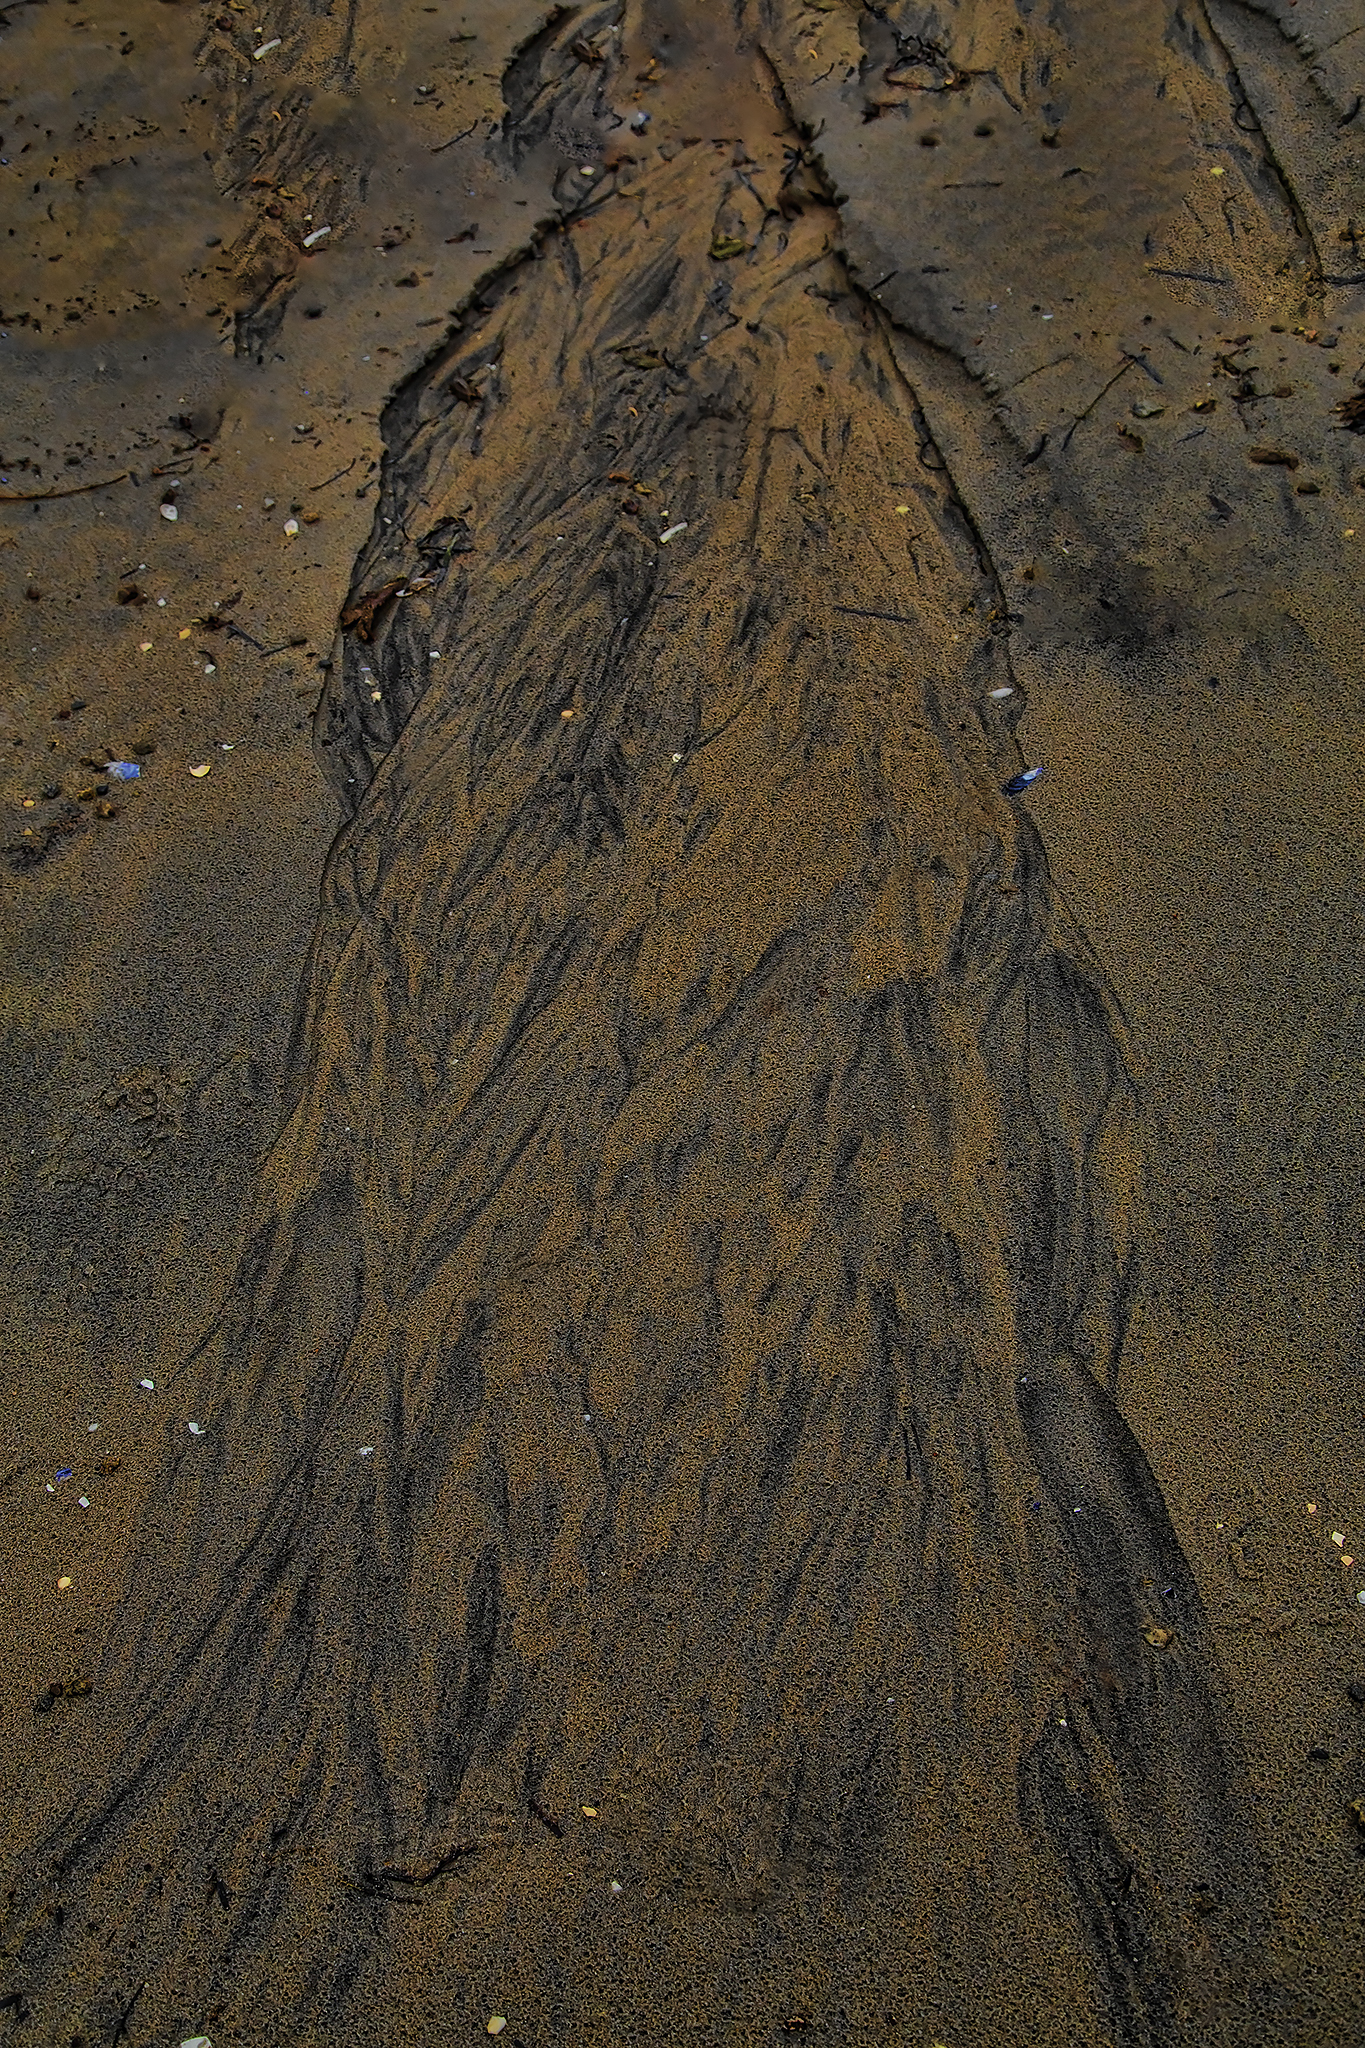   Mønster i sand.  